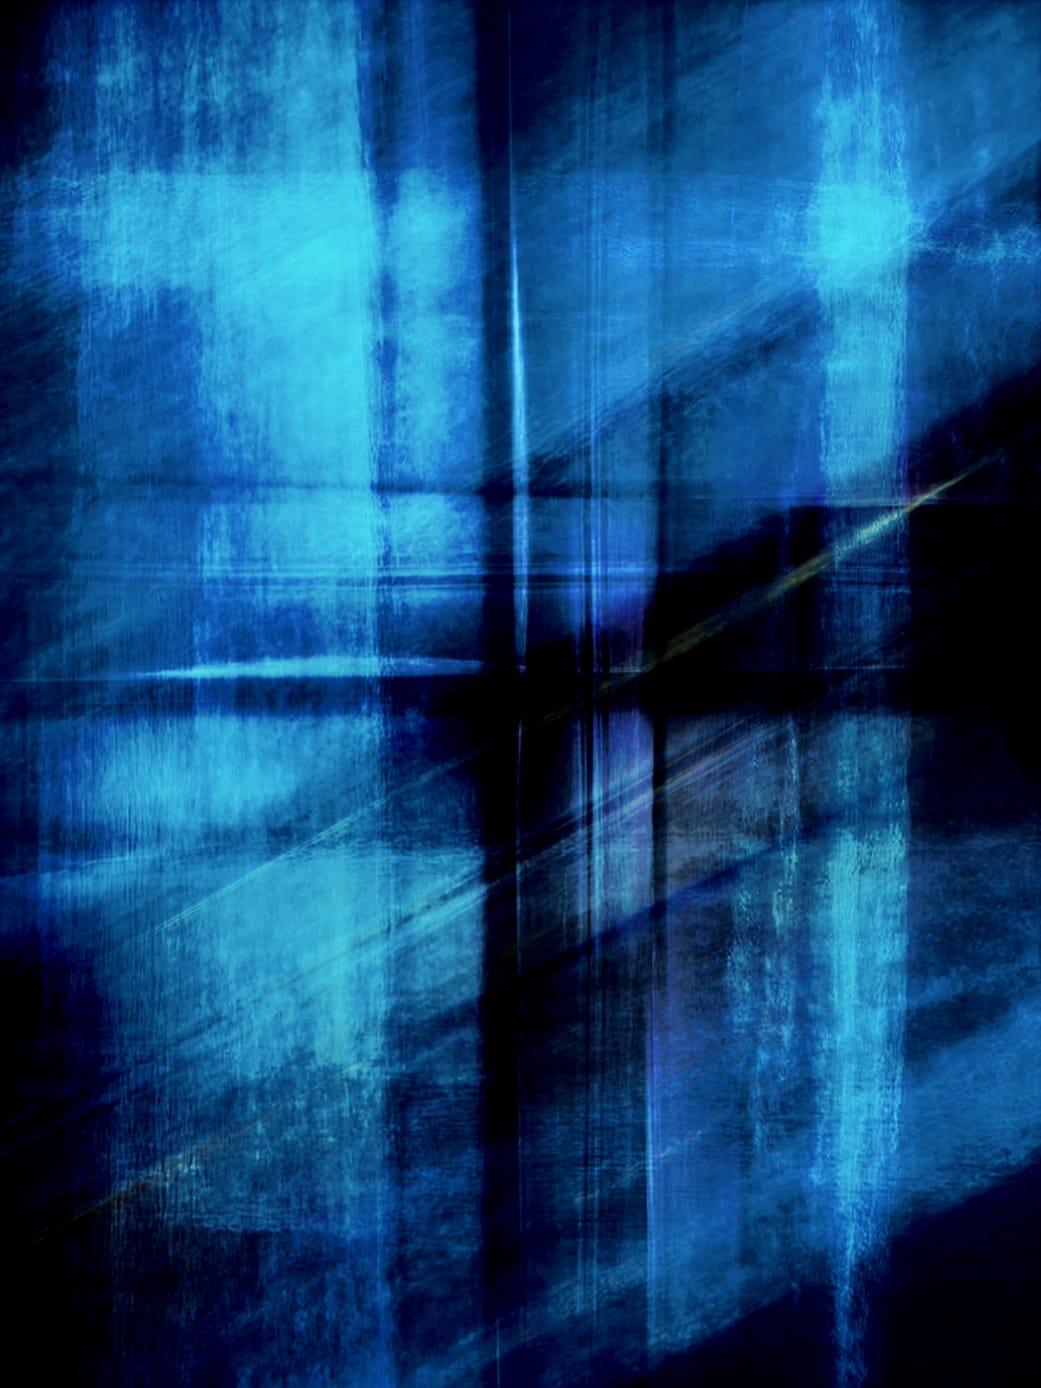 Fotografía, Scanography by Michael Monney aka acylmx, Imagen abstracta en azul y negro